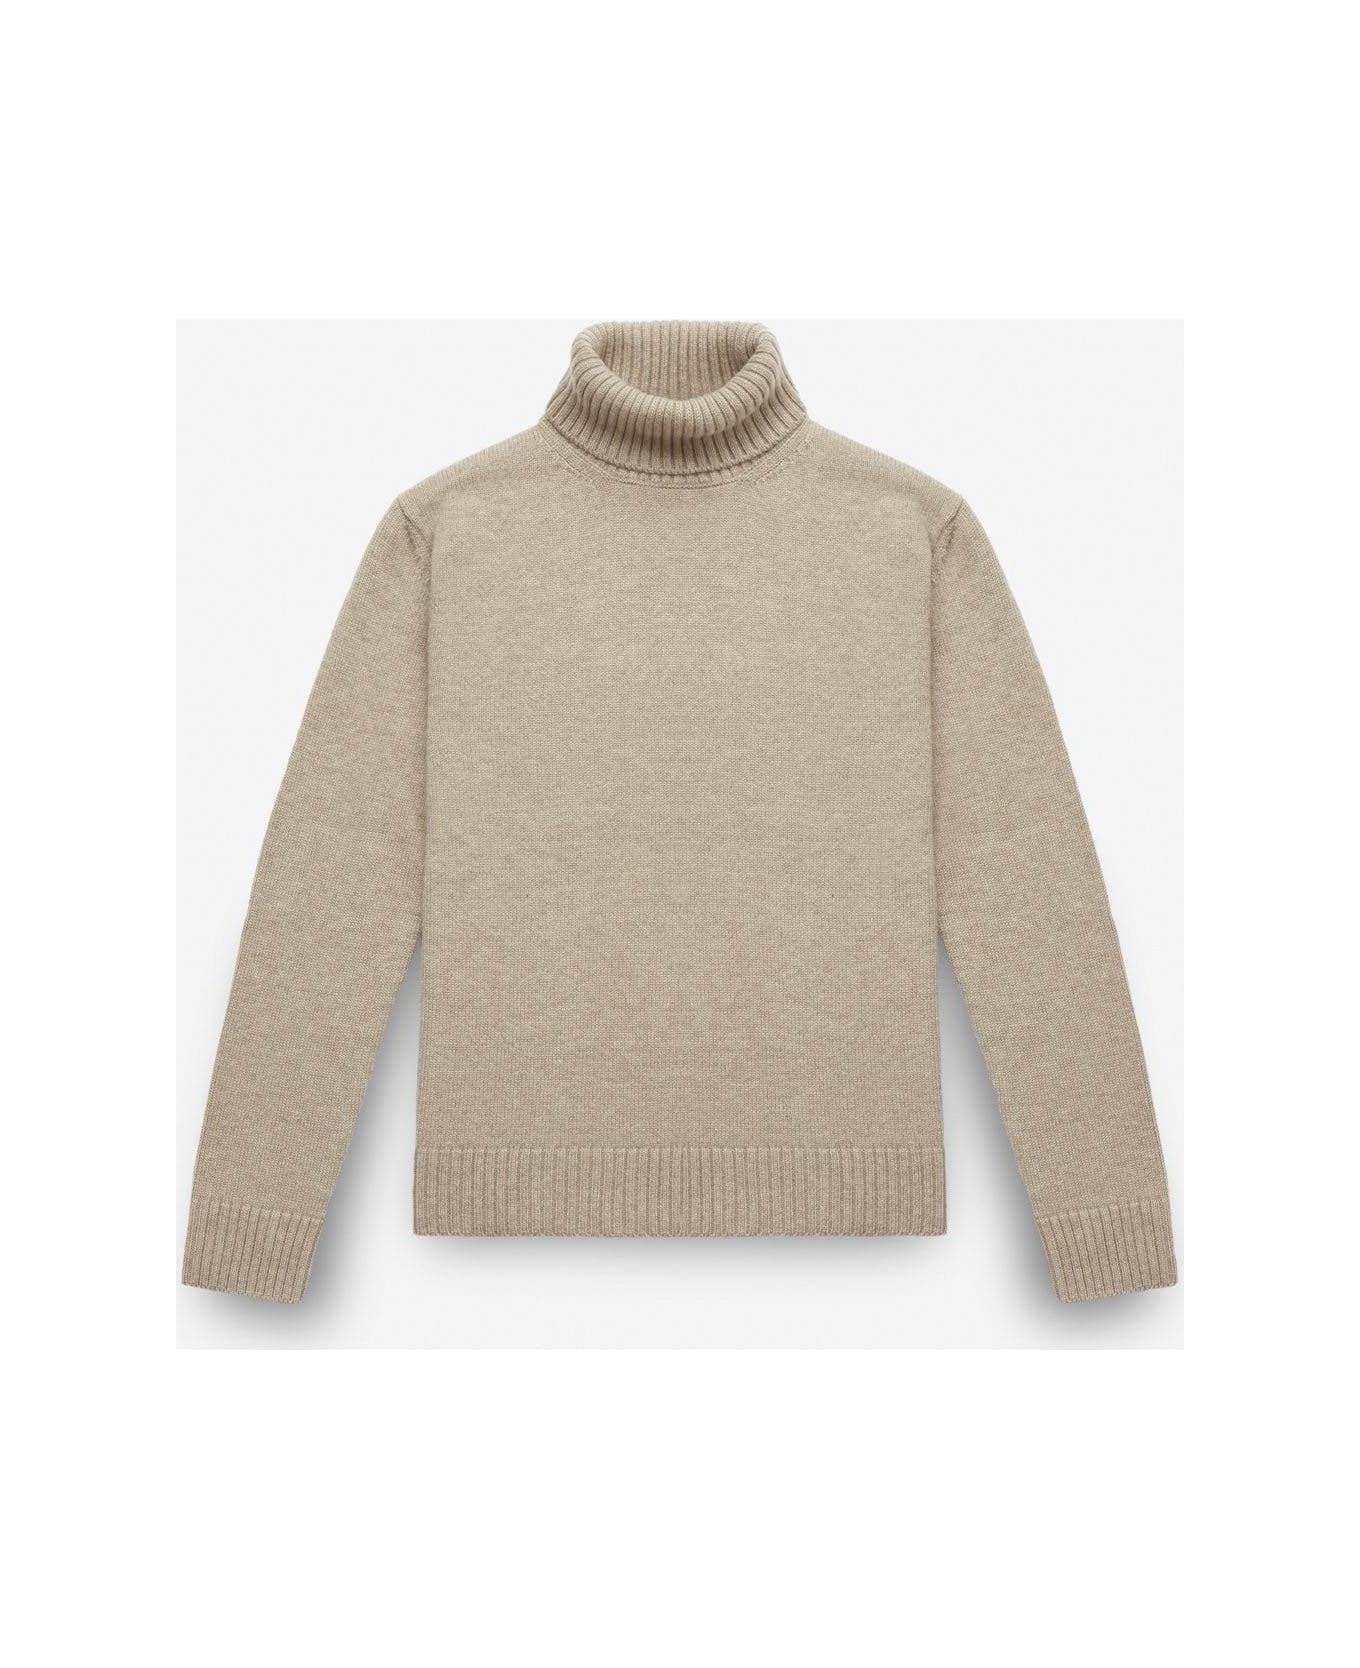 Larusmiani Turtleneck Sweater 'diablerets' Sweater - Beige